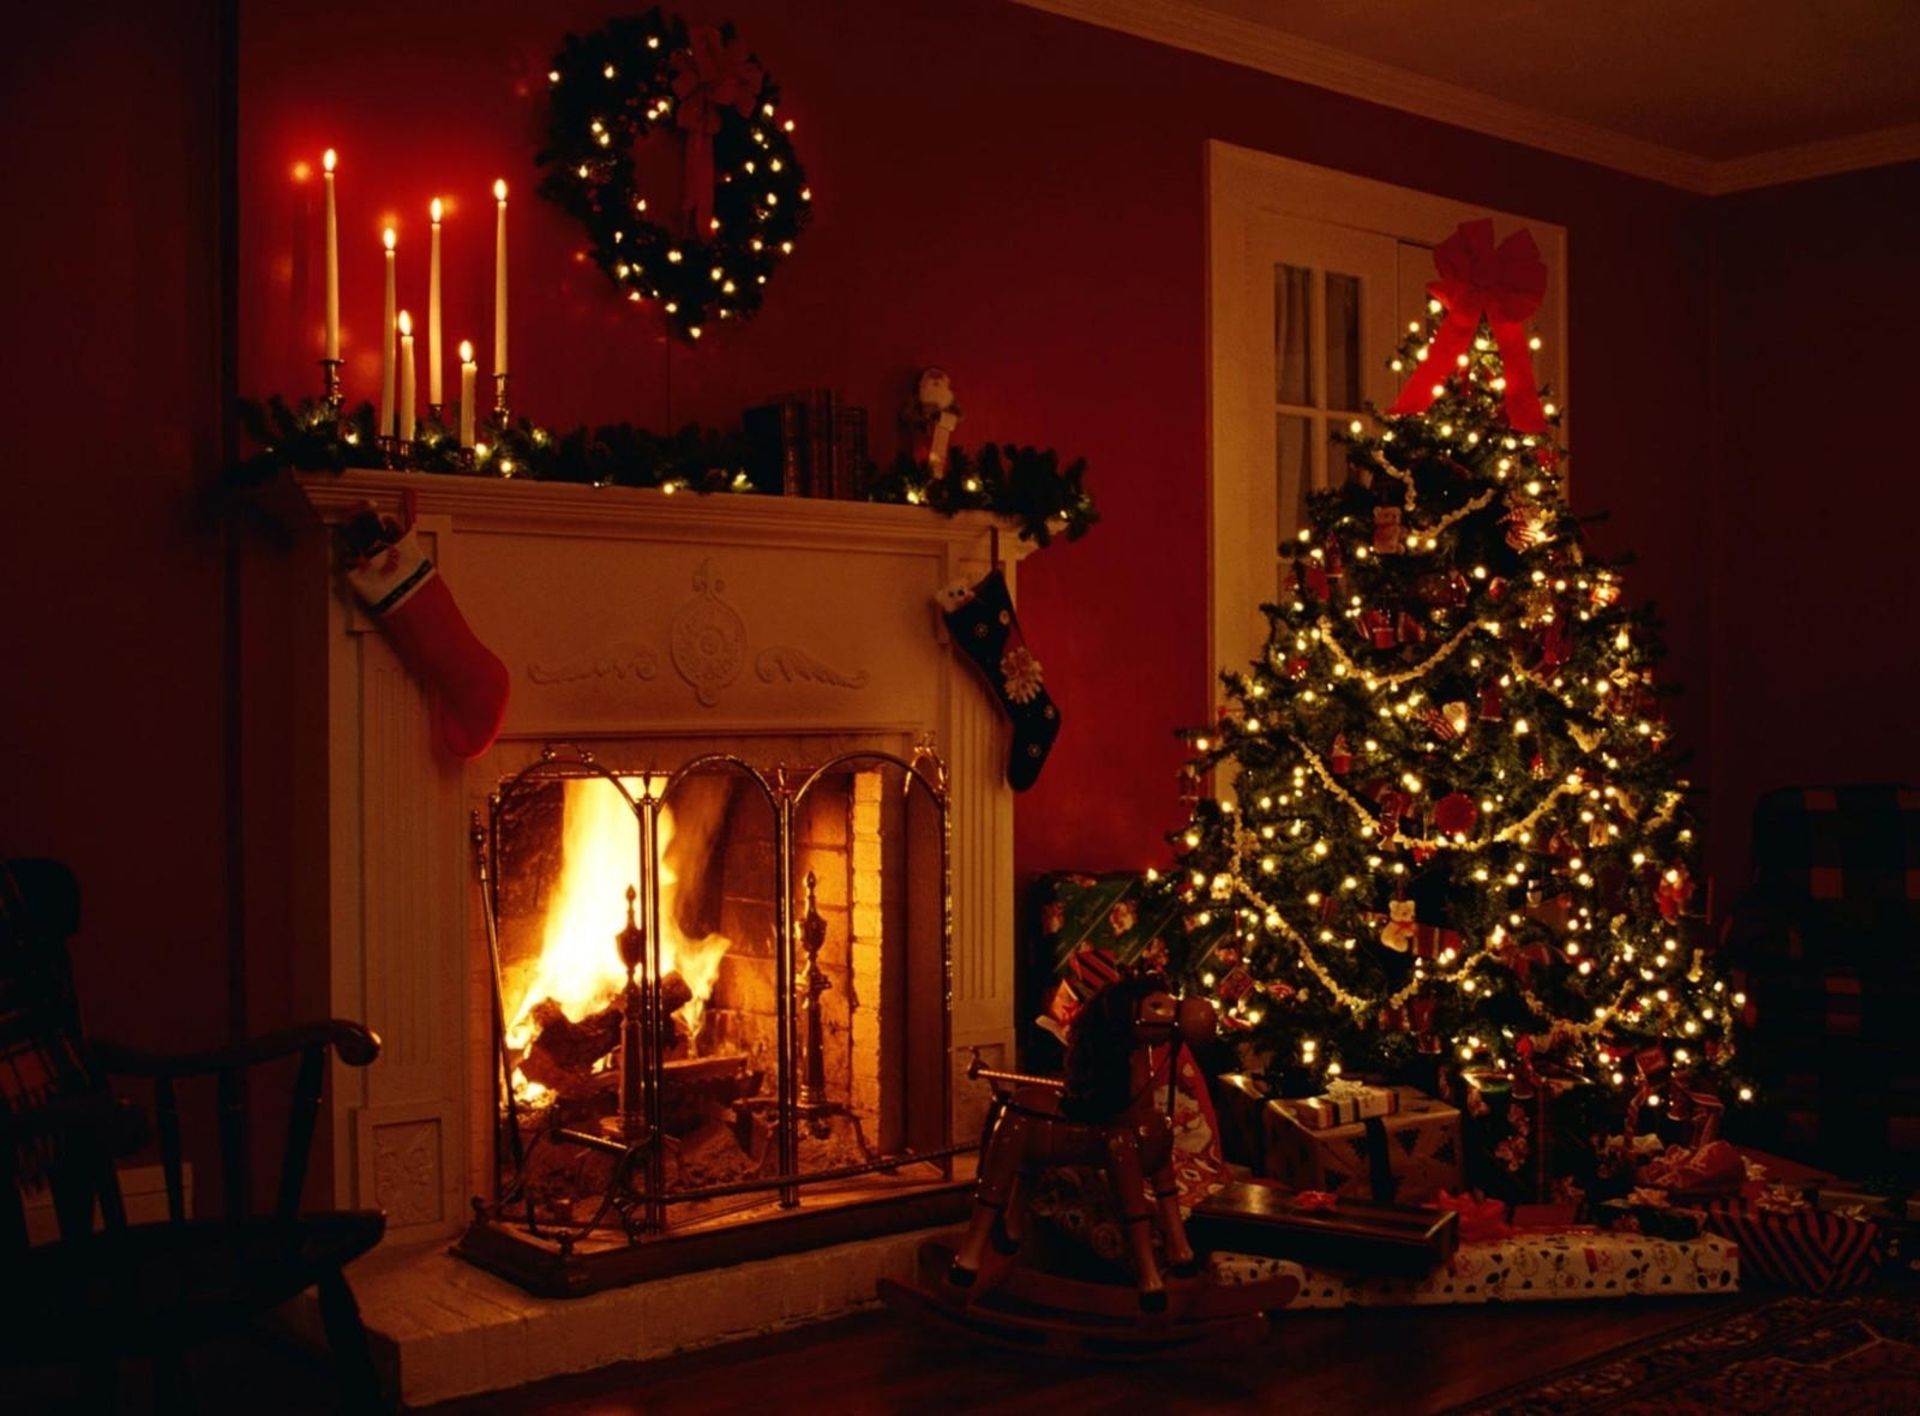 Fireplace Wallpaper. Fireplace Wallpaper, Christmas Fireplace Wallpaper and Romantic Fireplace Wallpaper